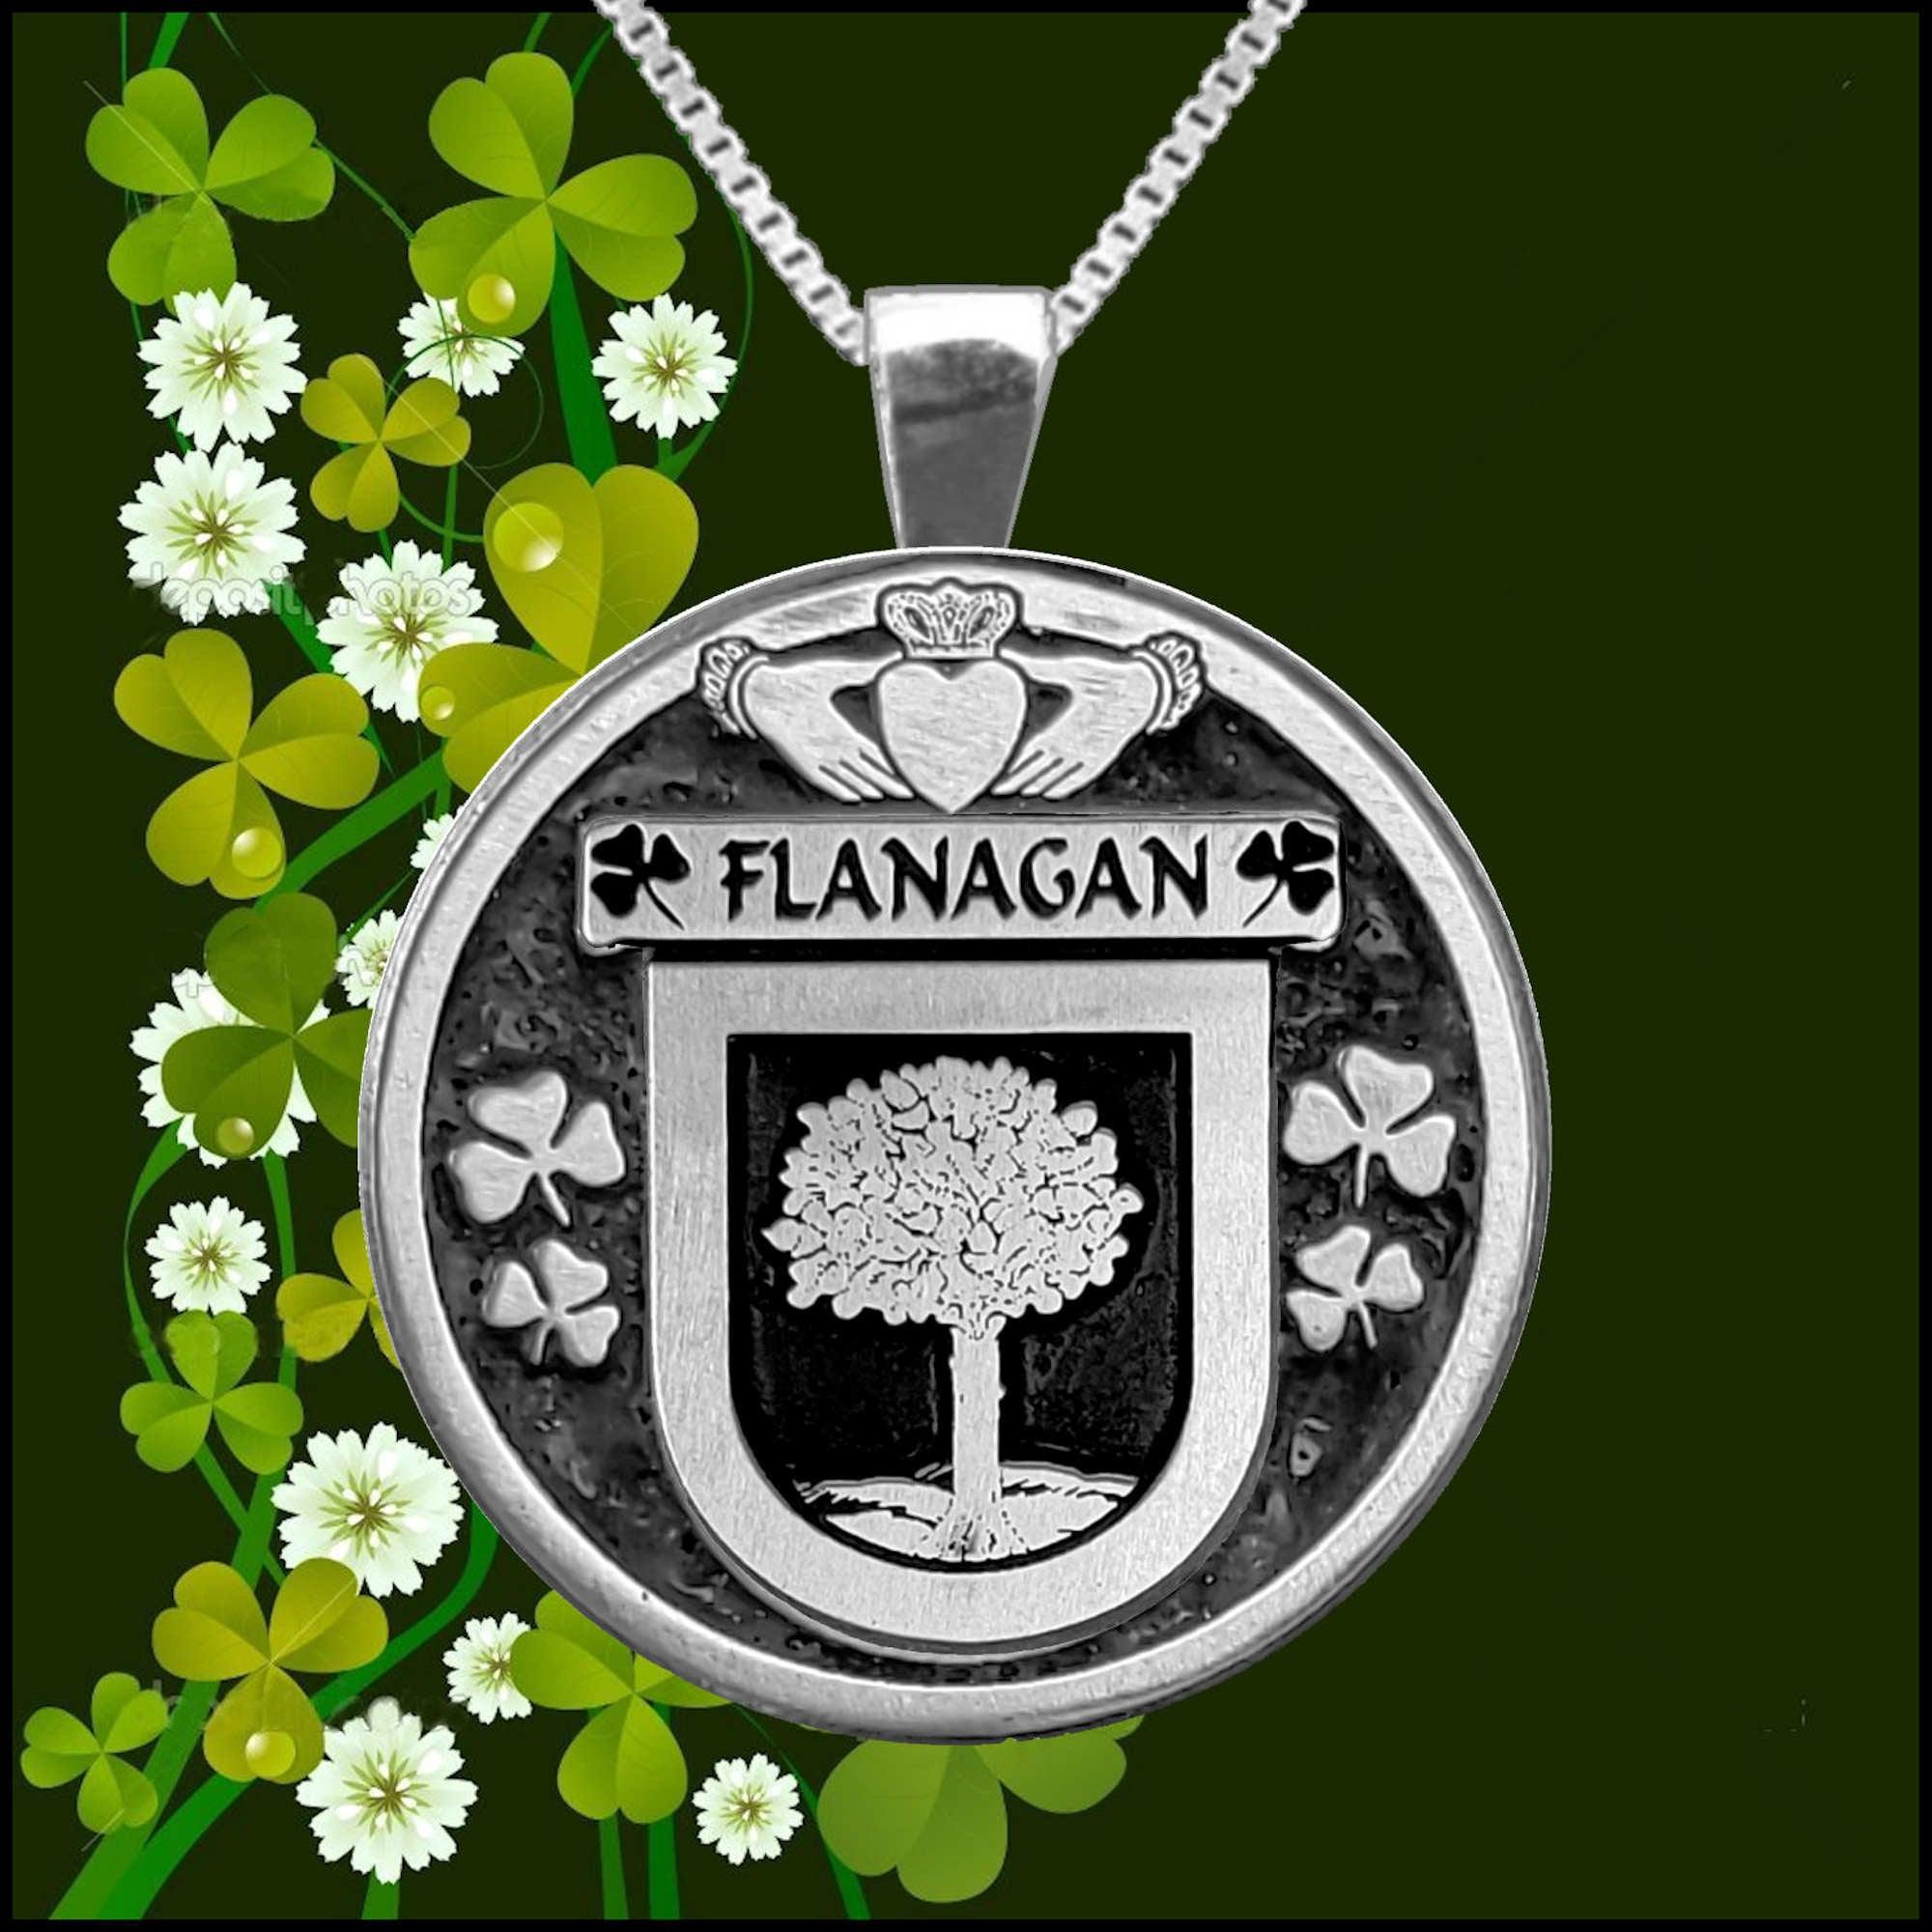 Flanagan Irish Coat of Arms Disk Pendant, Irish